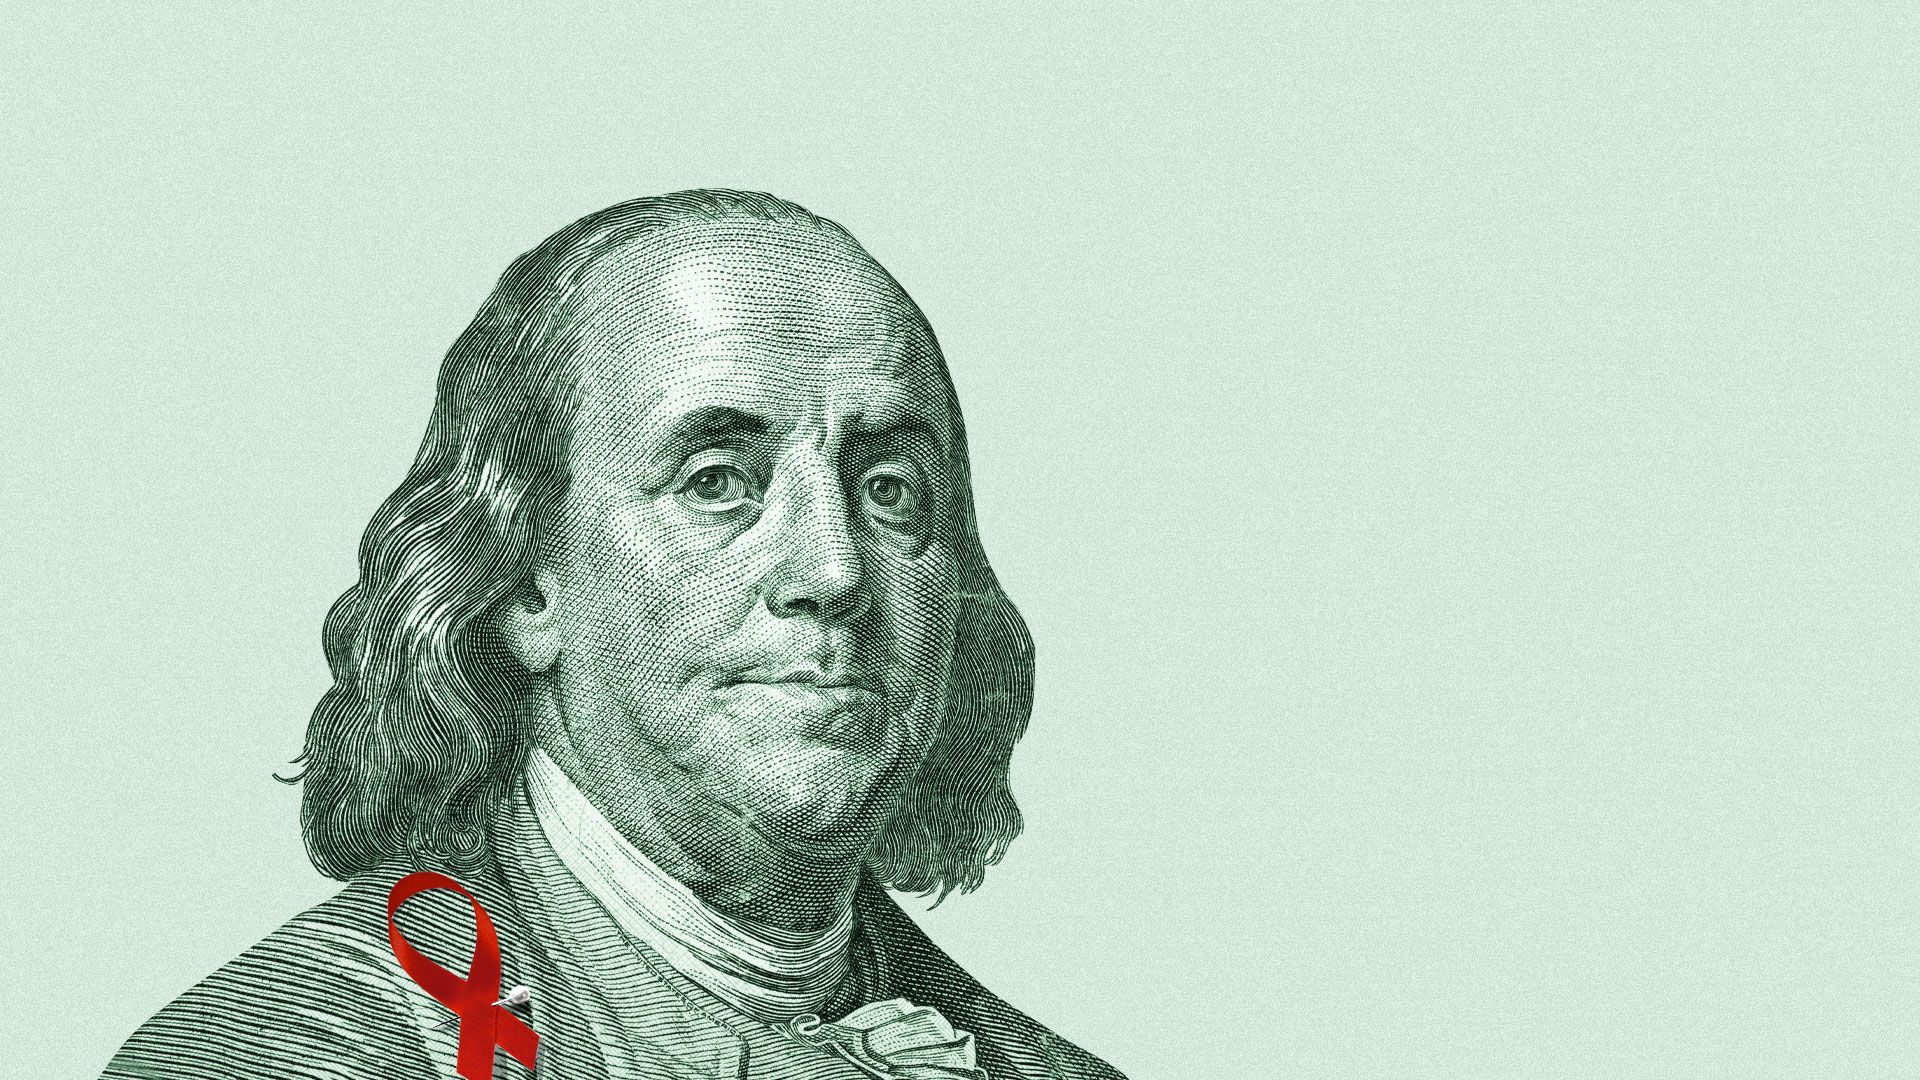 Illustration of Benjamin Franklin.